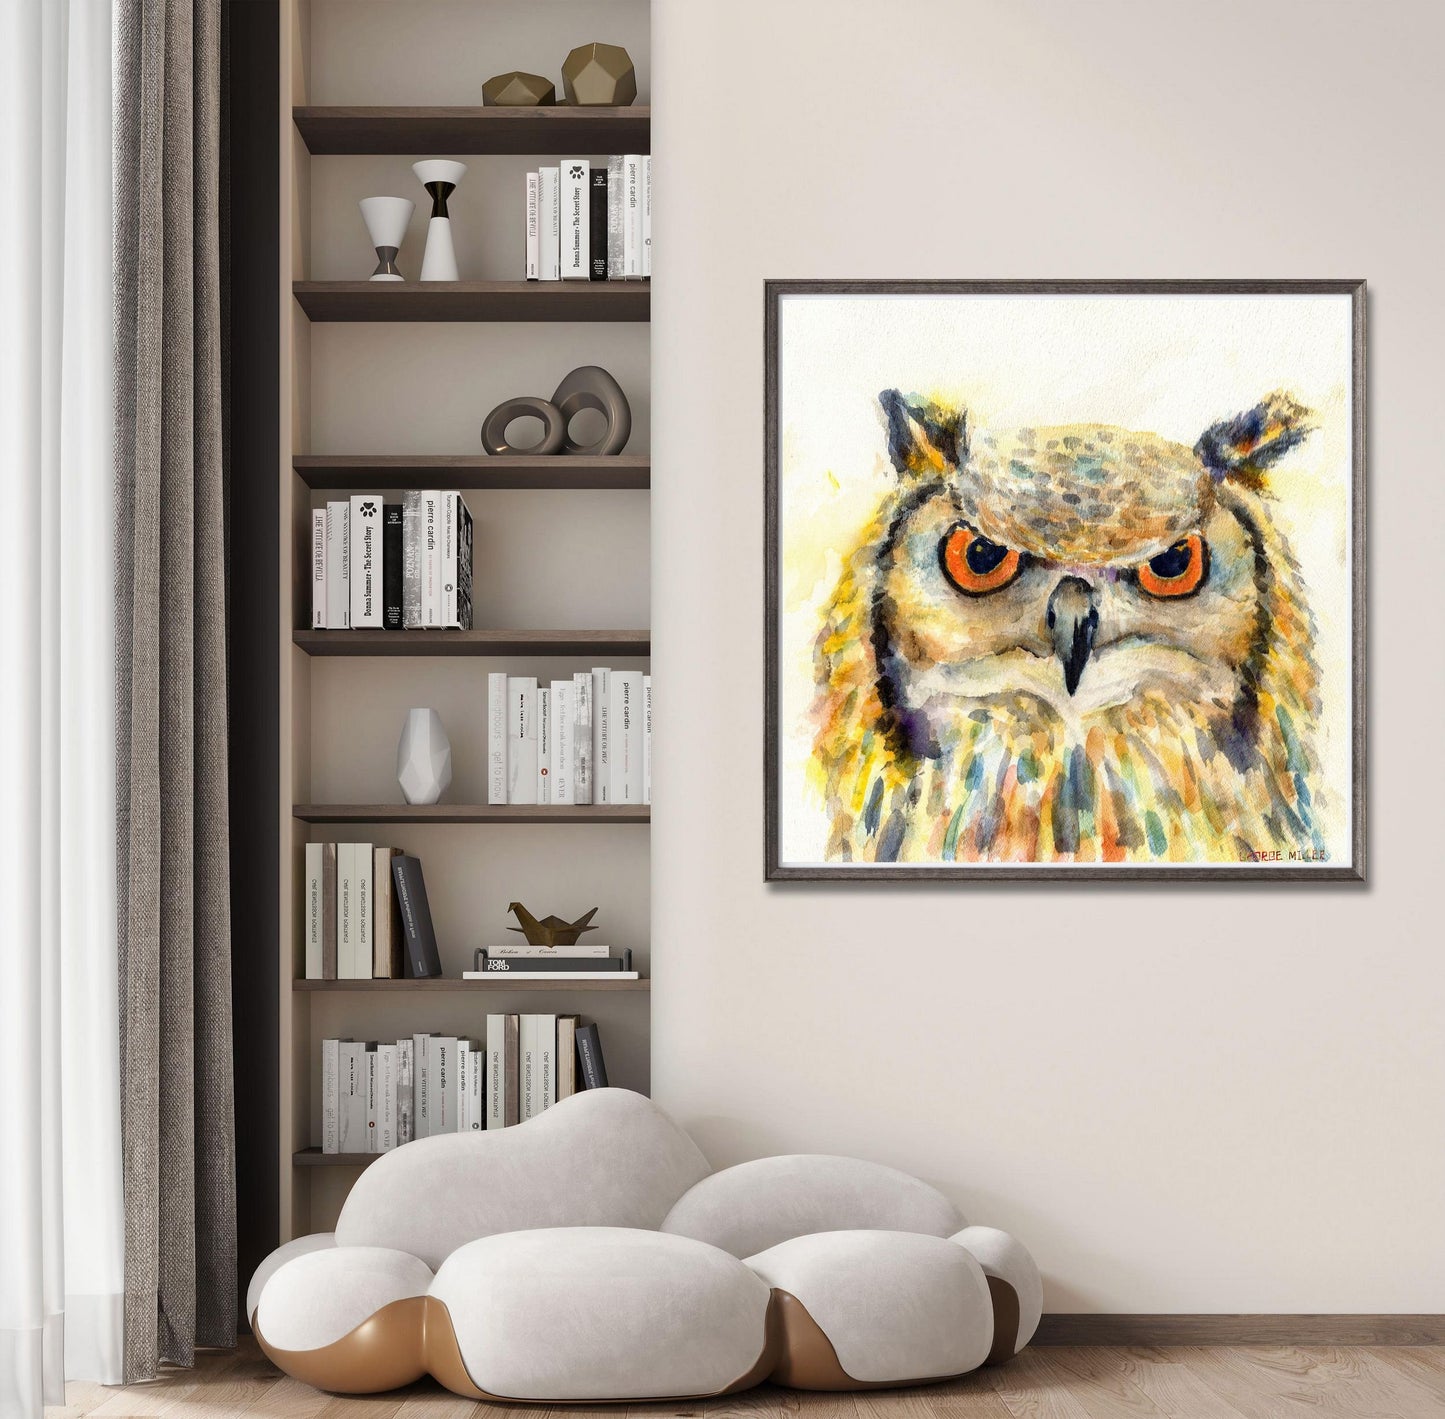 Canvas Print A Owl, Wall Décor Bedroom, Abstract Artwork, Birds Art, Modern Art Painting, Original Art Landscape, Home Décor Wall Art